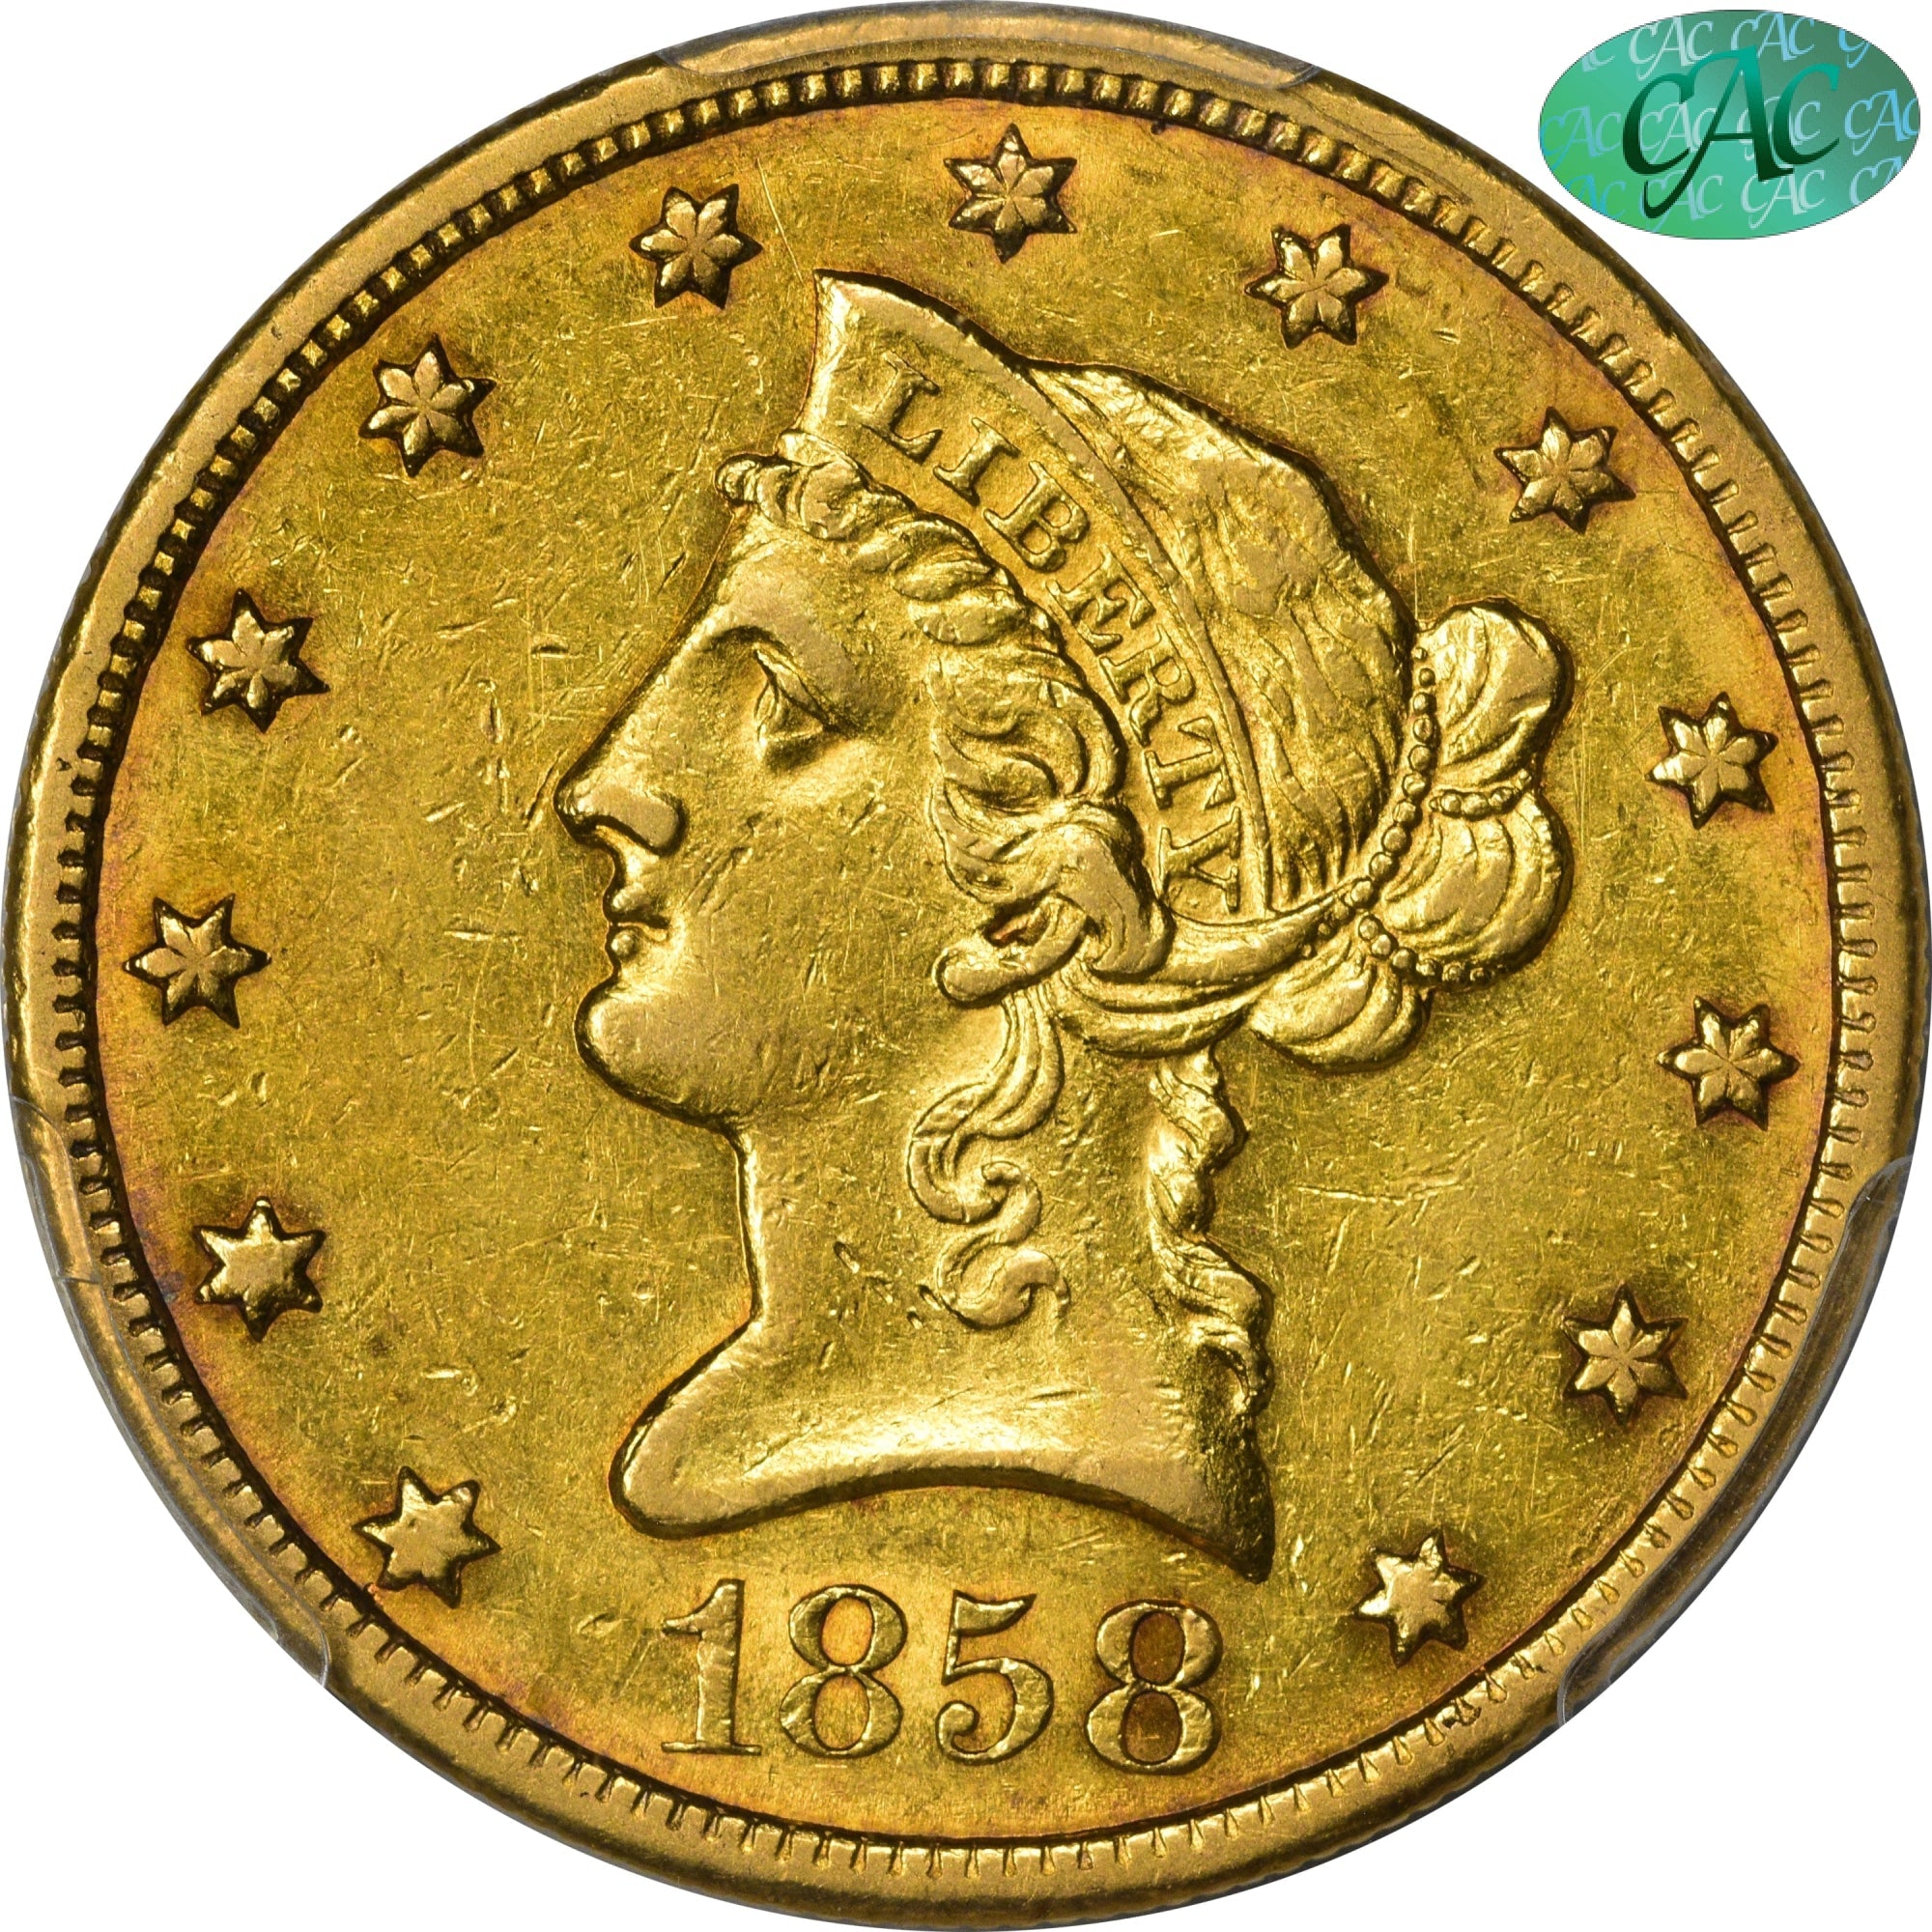 1858-O $10 AU55 PCGS CAC - Paradime Coins | PCGS NGC CACG CAC Rare US Numismatic Coins For Sale